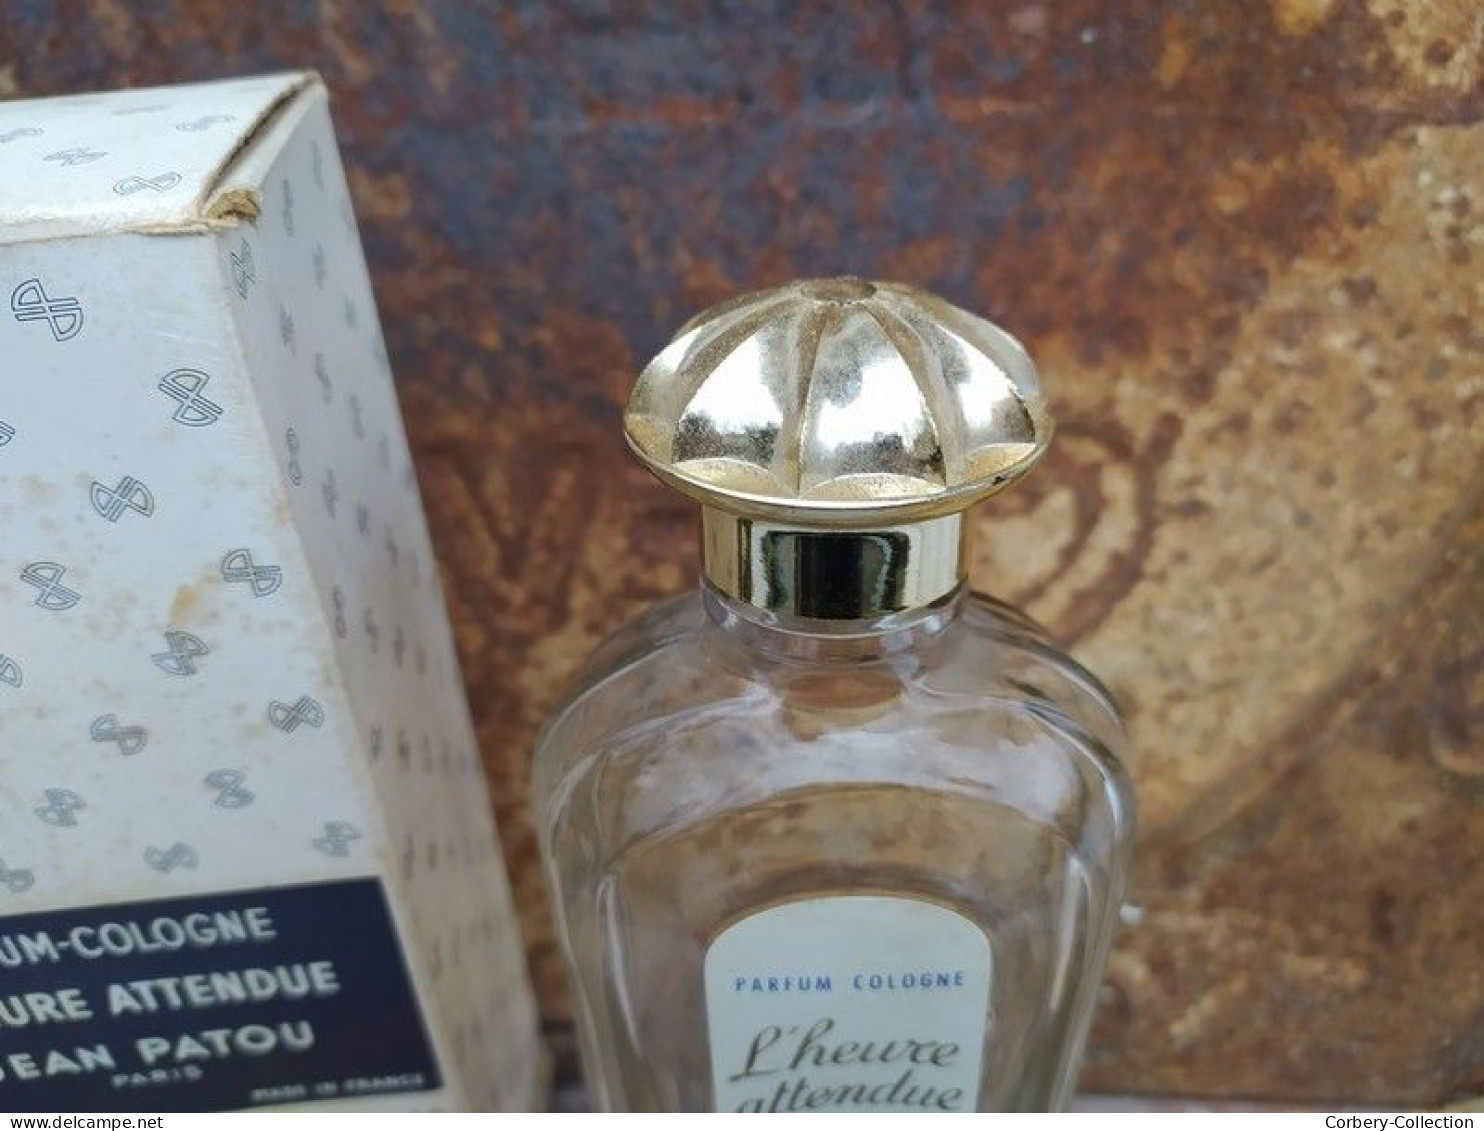 Ancien Flacon Parfum Jean Patou Paris L'Heure Attendue - Bottles (empty)